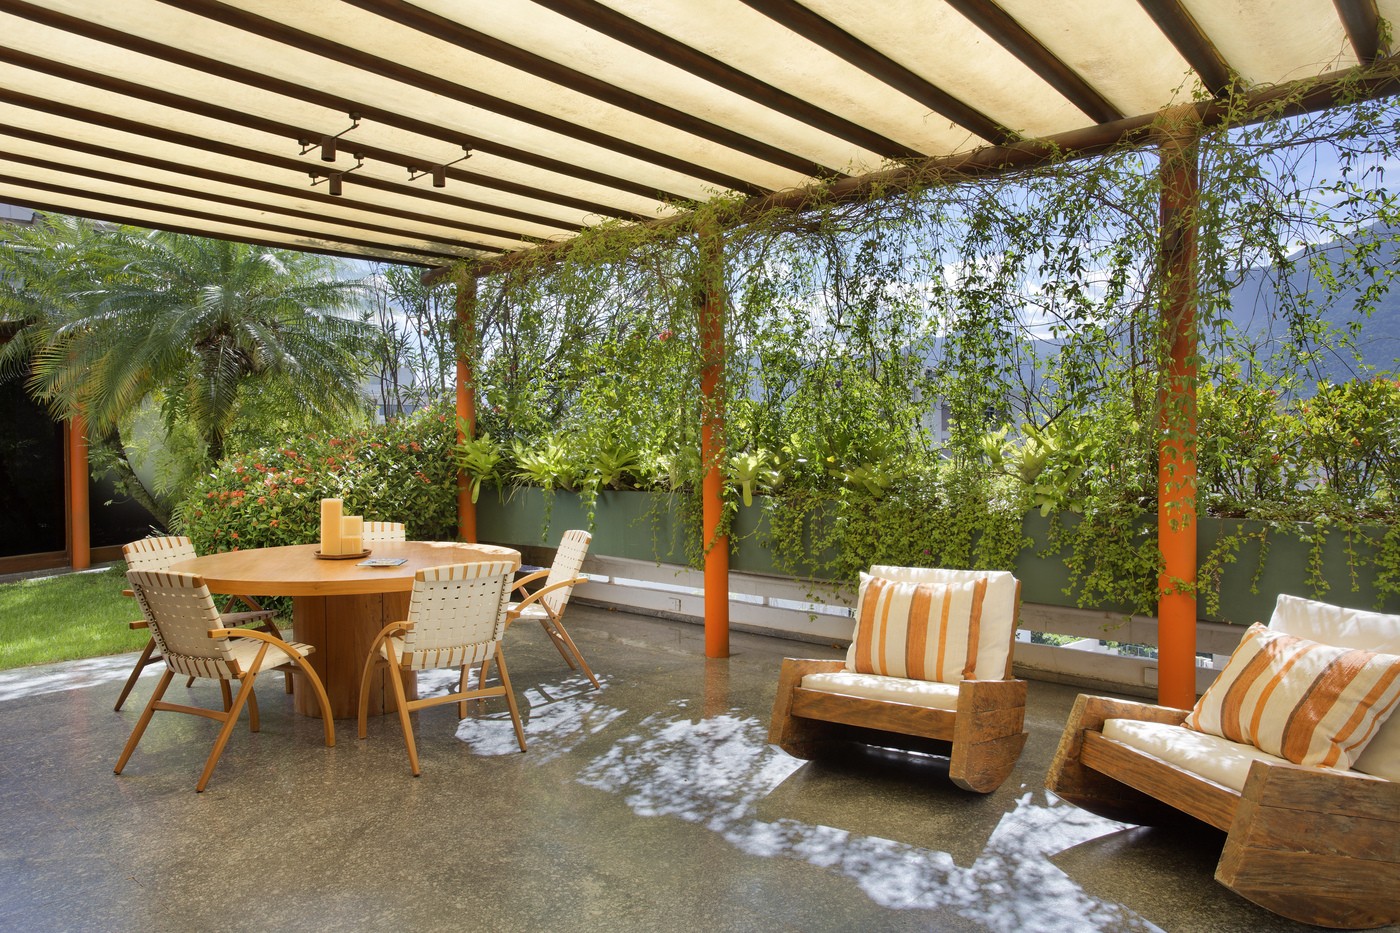 Décor do dia: terraço reúne jardim, piscina e área gourmet no mesmo espaço (Foto: Divulgação)